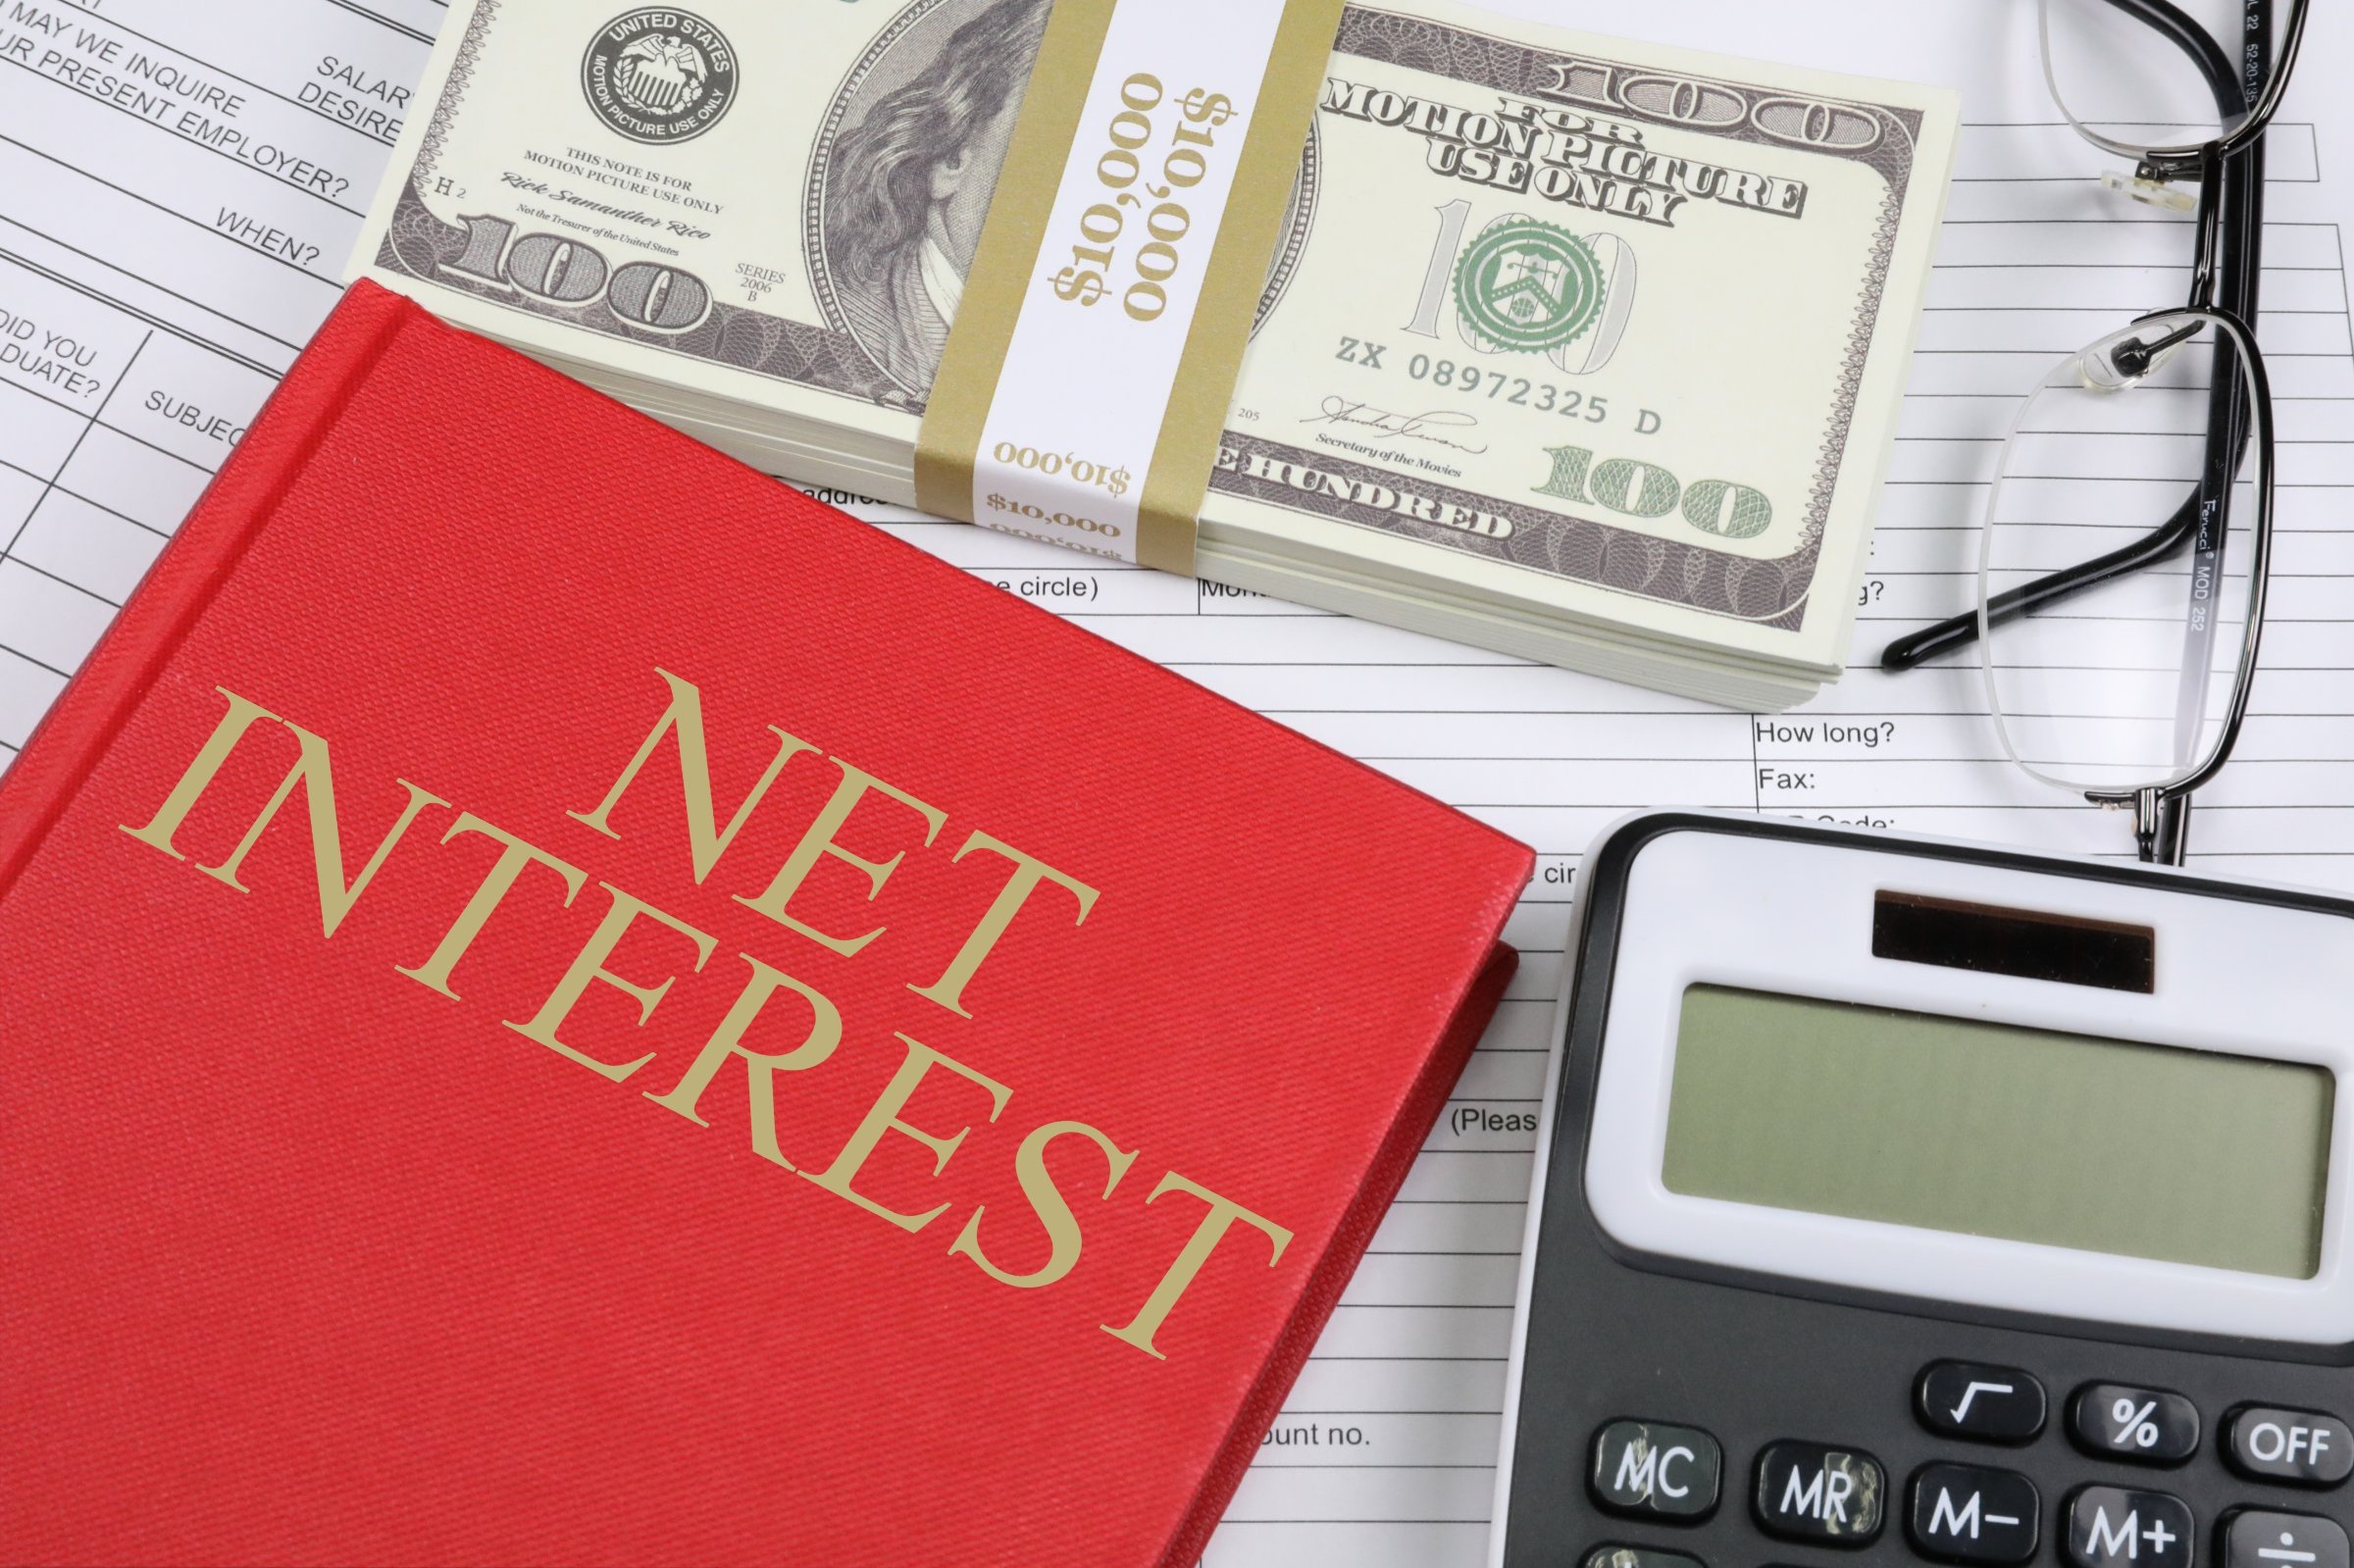 net interest